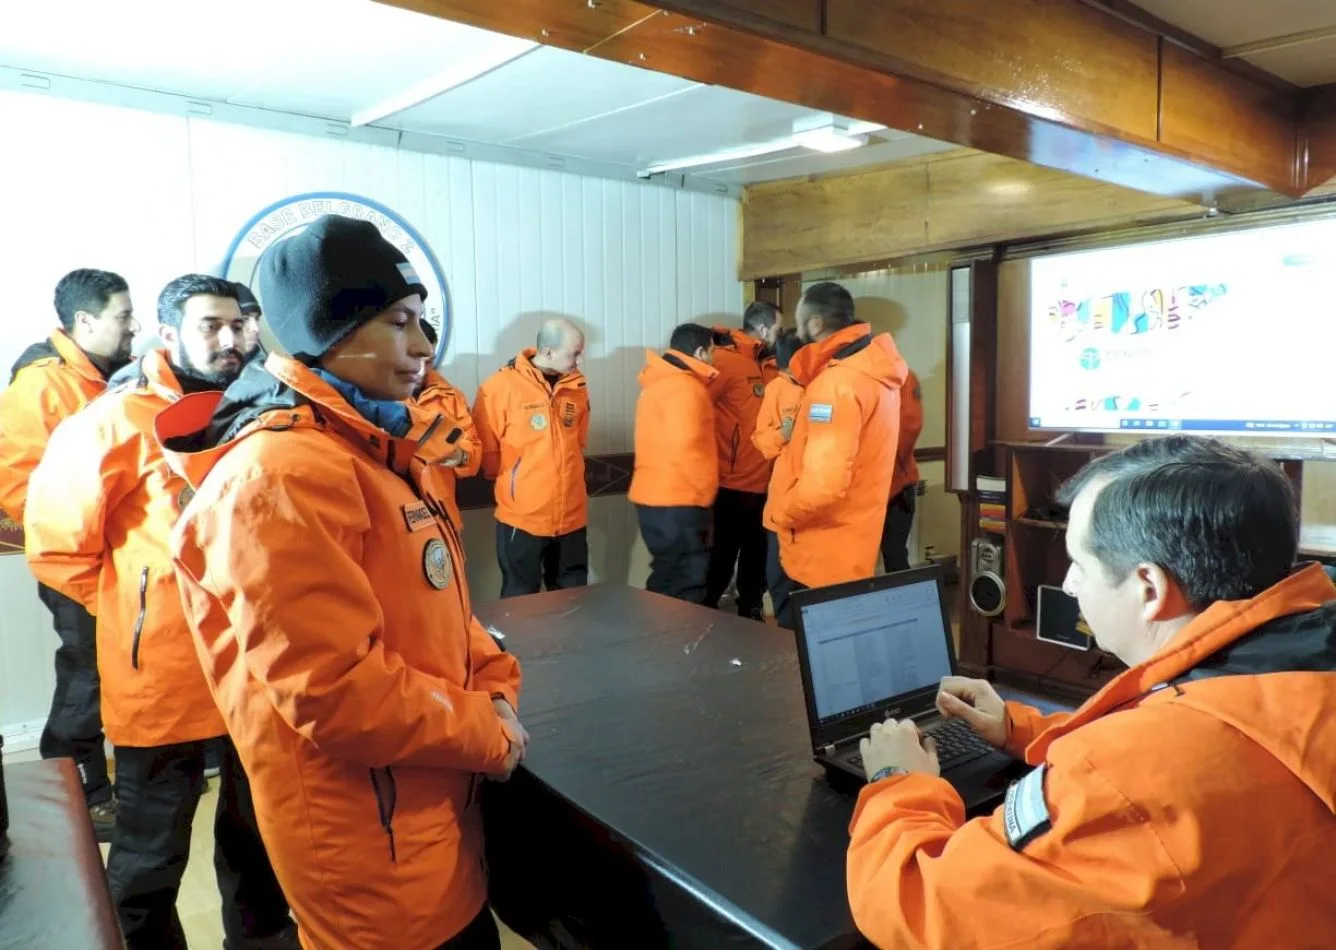 El personal desplegado en las bases antárticas fue censado en su totalidad